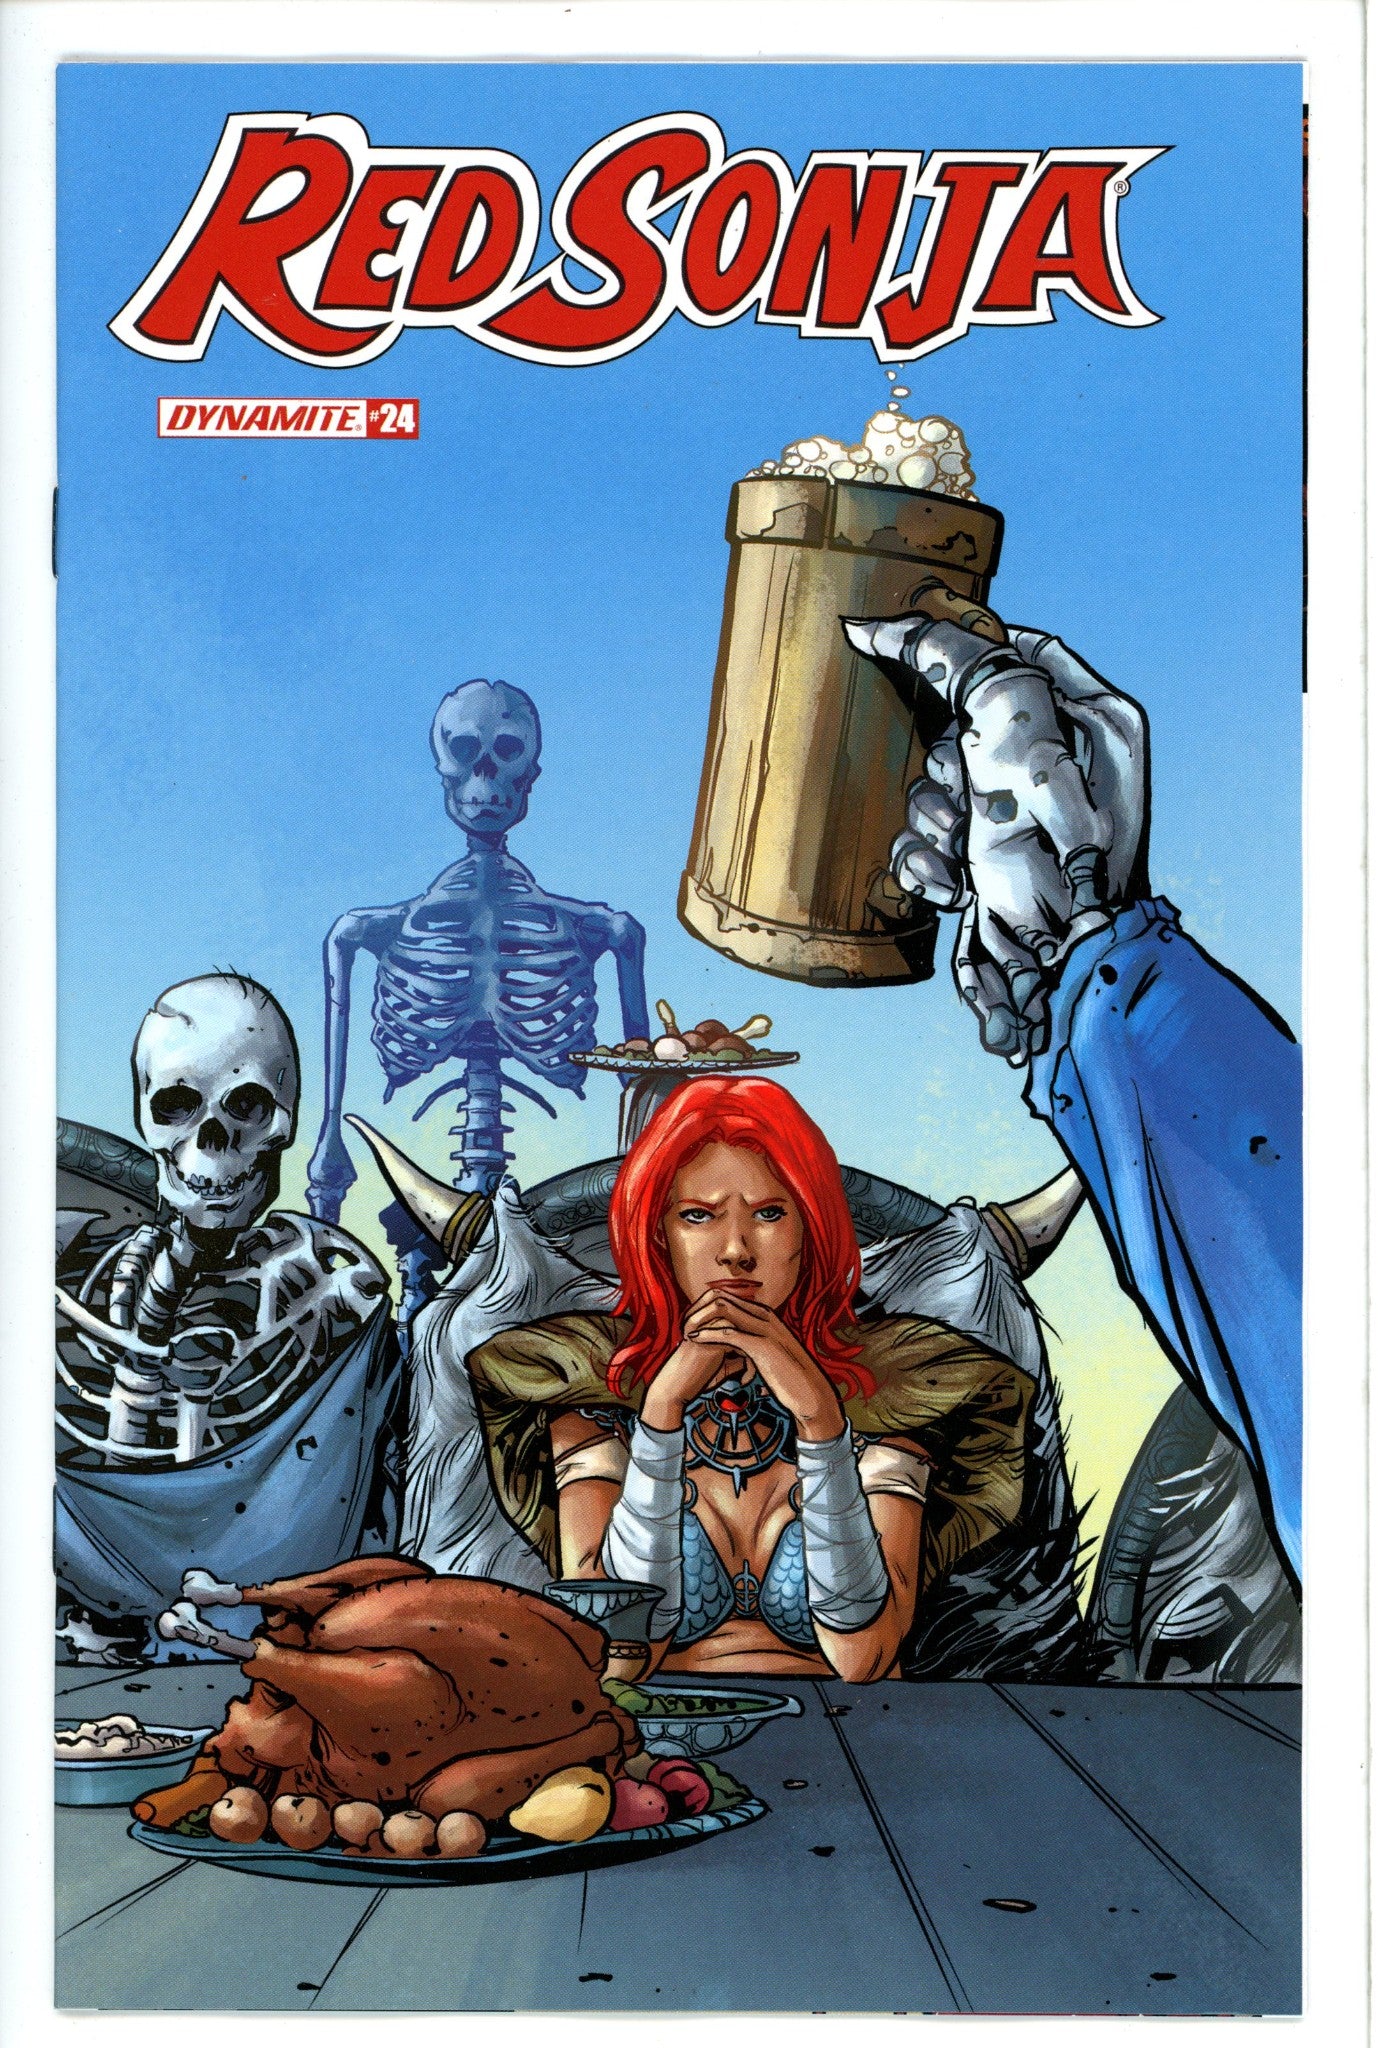 Red Sonja Vol 5 24 Colak Variant-Dynamite-CaptCan Comics Inc